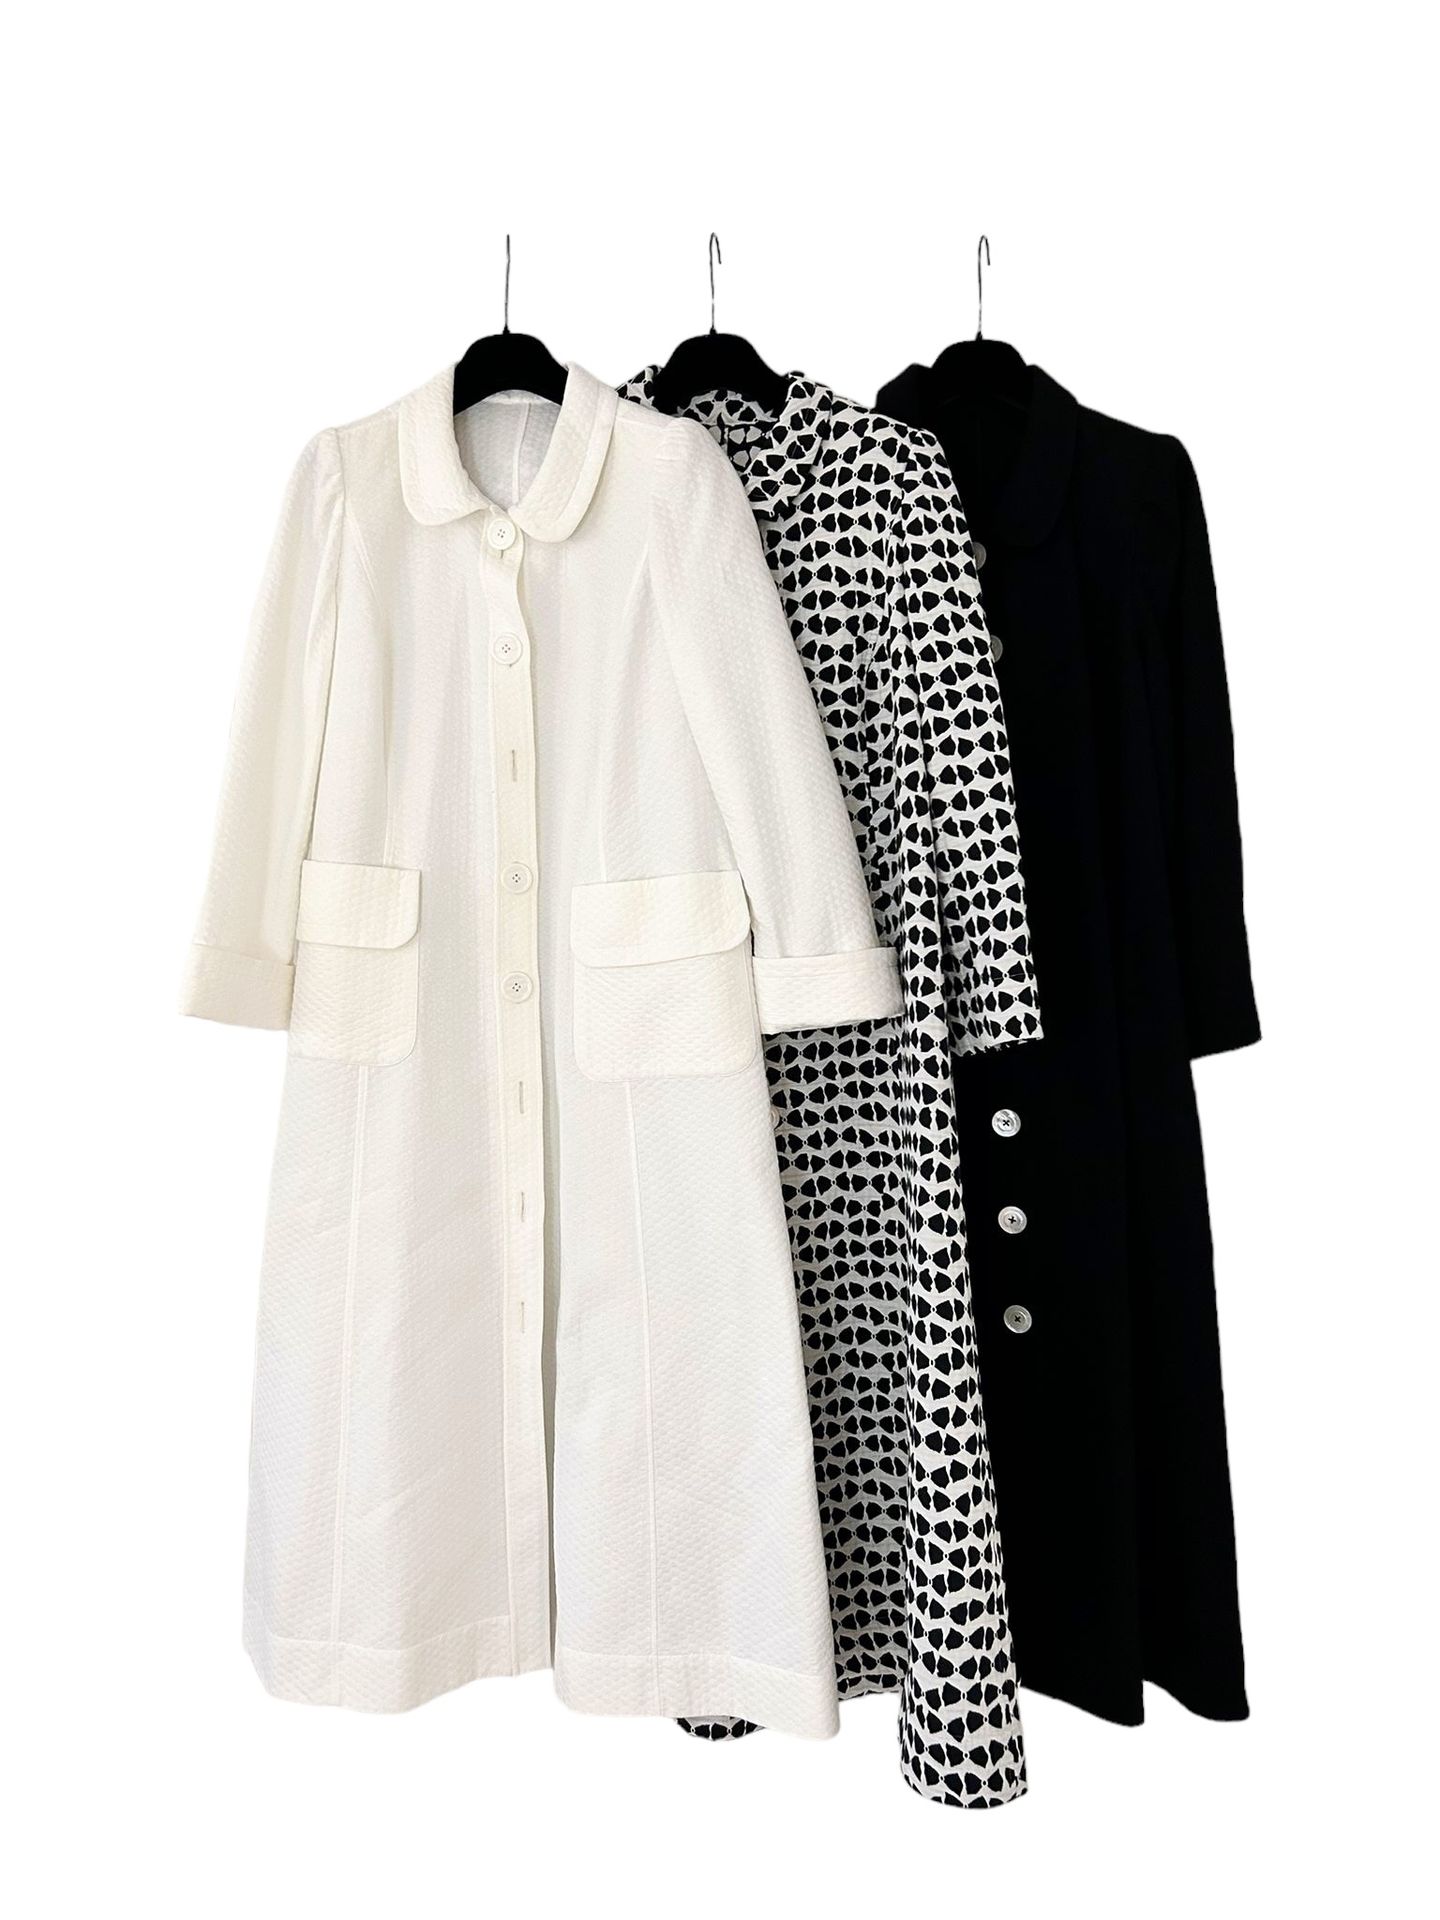 PIO O' KAN Suite de trois manteaux d'été, dame
En coton, de teinte noir et blanc&hellip;